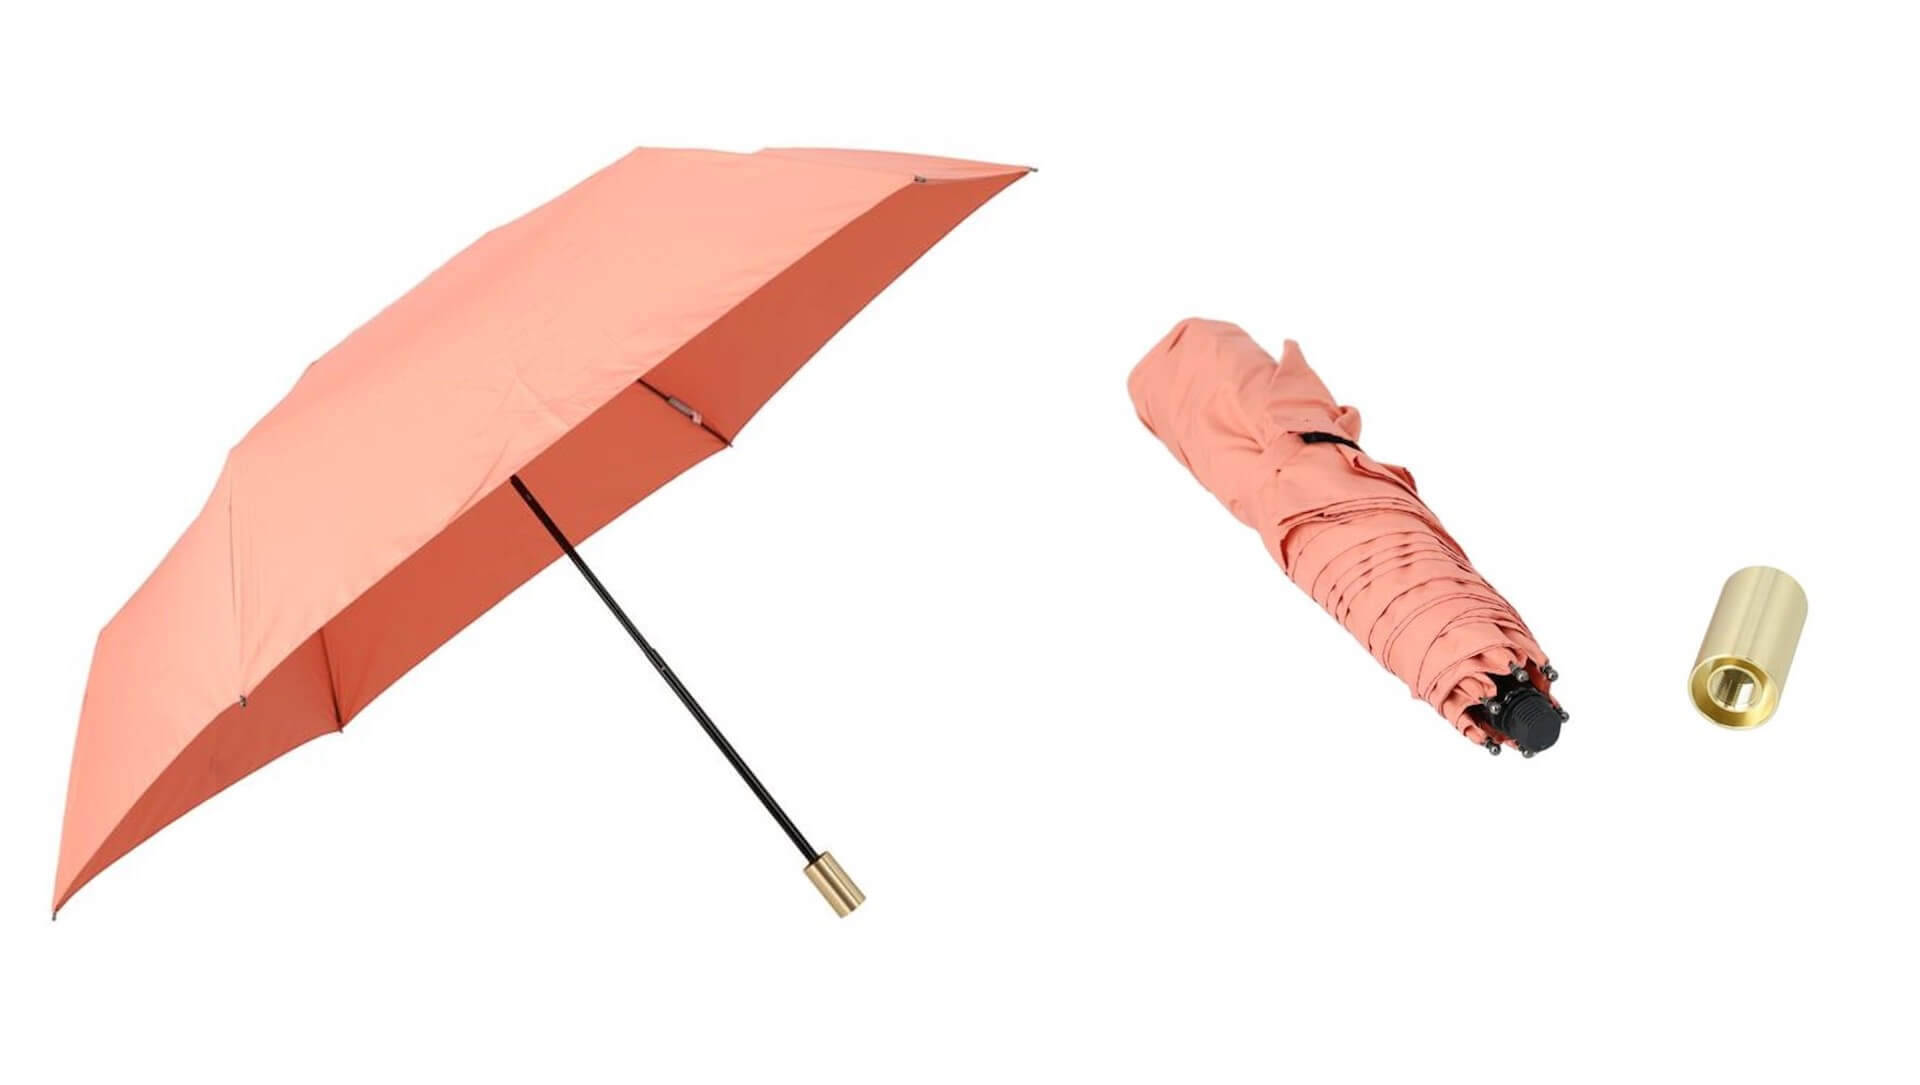 ソーシャルディスタンス確保や熱中症対策などができる最新機能を備えた傘がロフトにて展開中！新作をご紹介